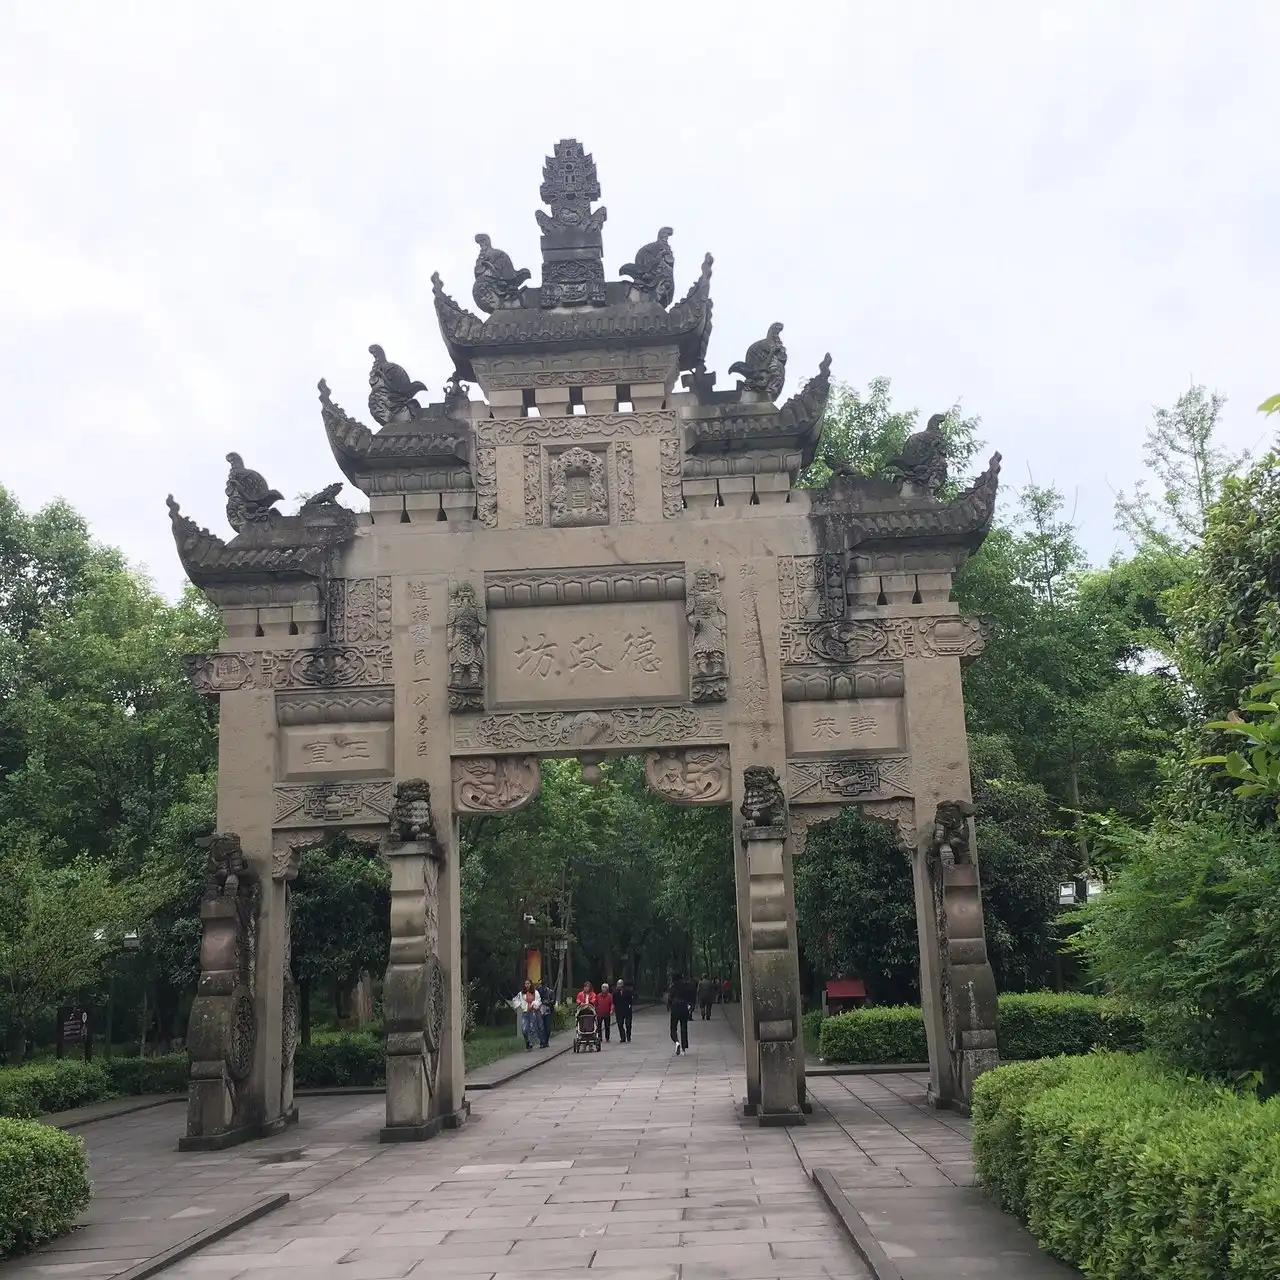 Guang’an tourism